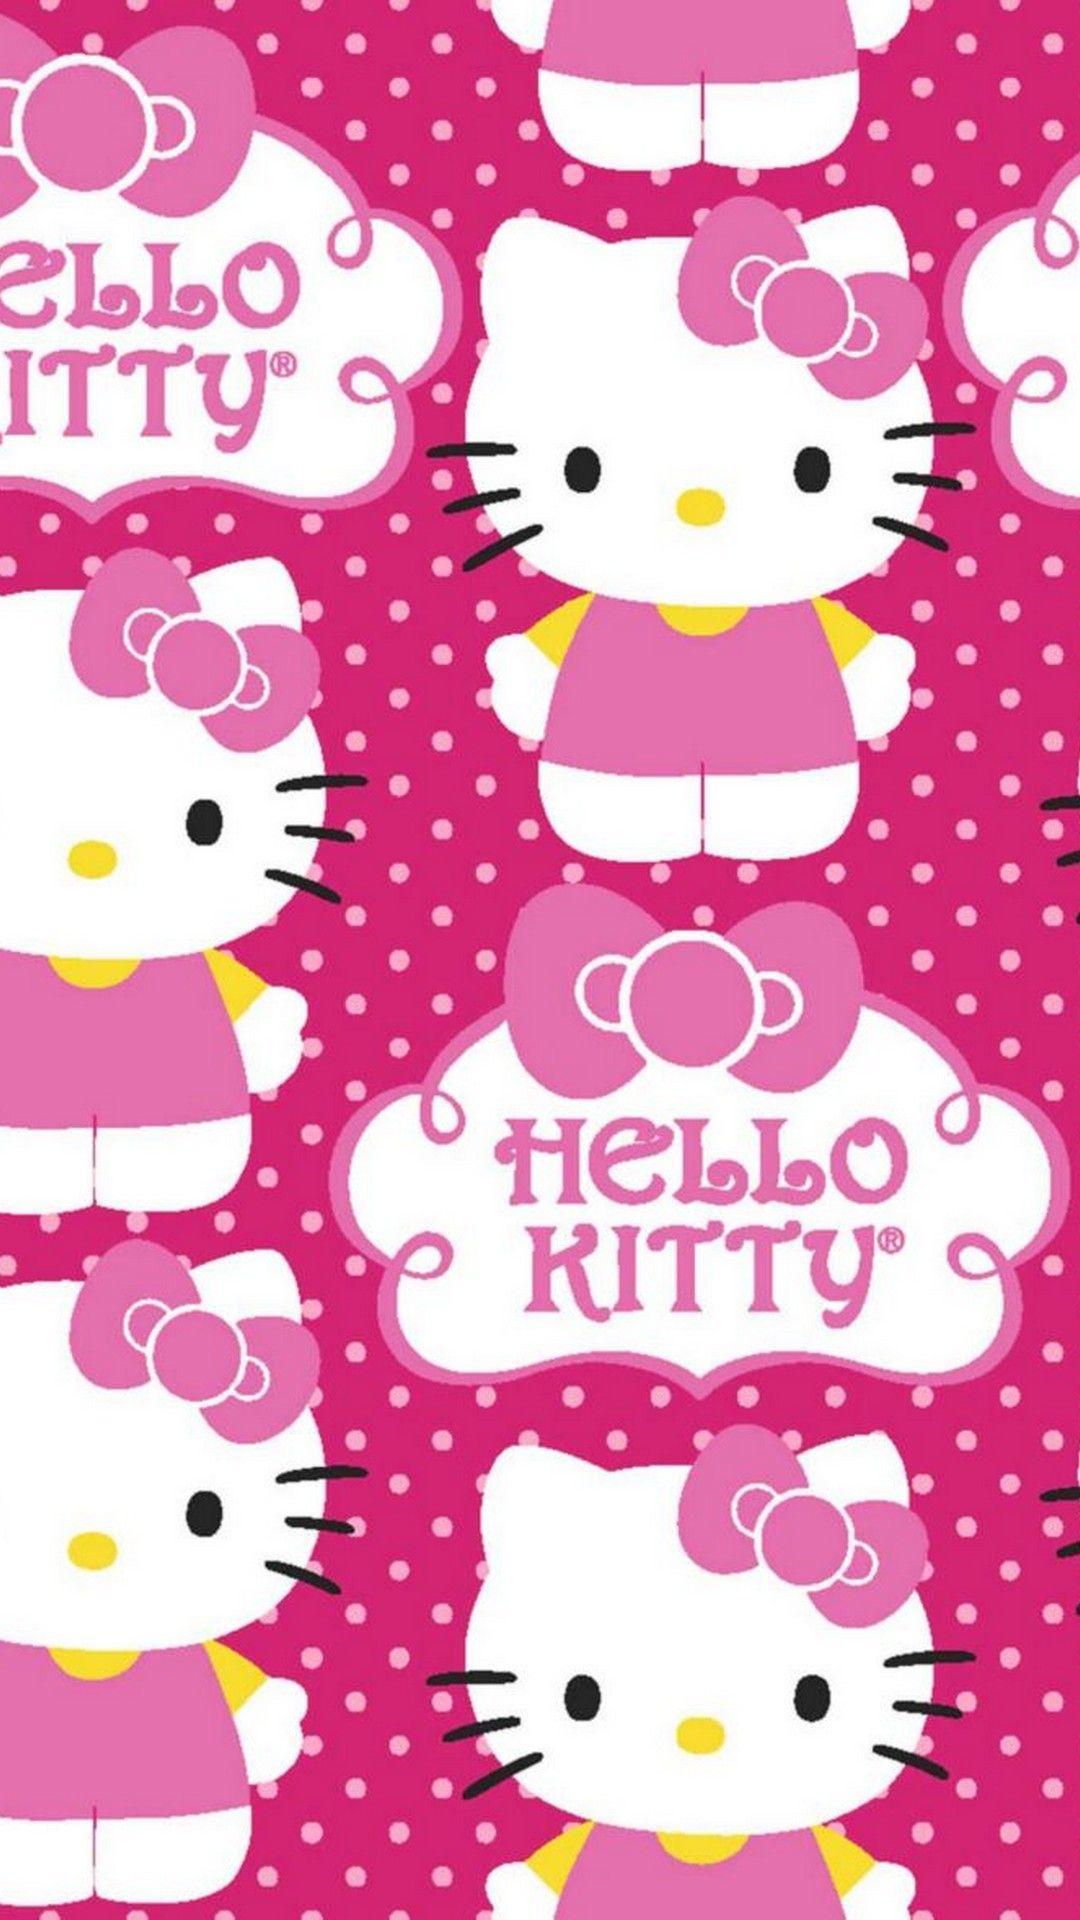 Với bộ sưu tập hình nền iPhone Hello Kitty màu hồng cực kỳ dễ thương, bạn có thể trở thành fan hâm mộ Hello Kitty chính thức. Trang trí cho điện thoại của bạn một cách cực kỳ xinh đẹp và duyên dáng.